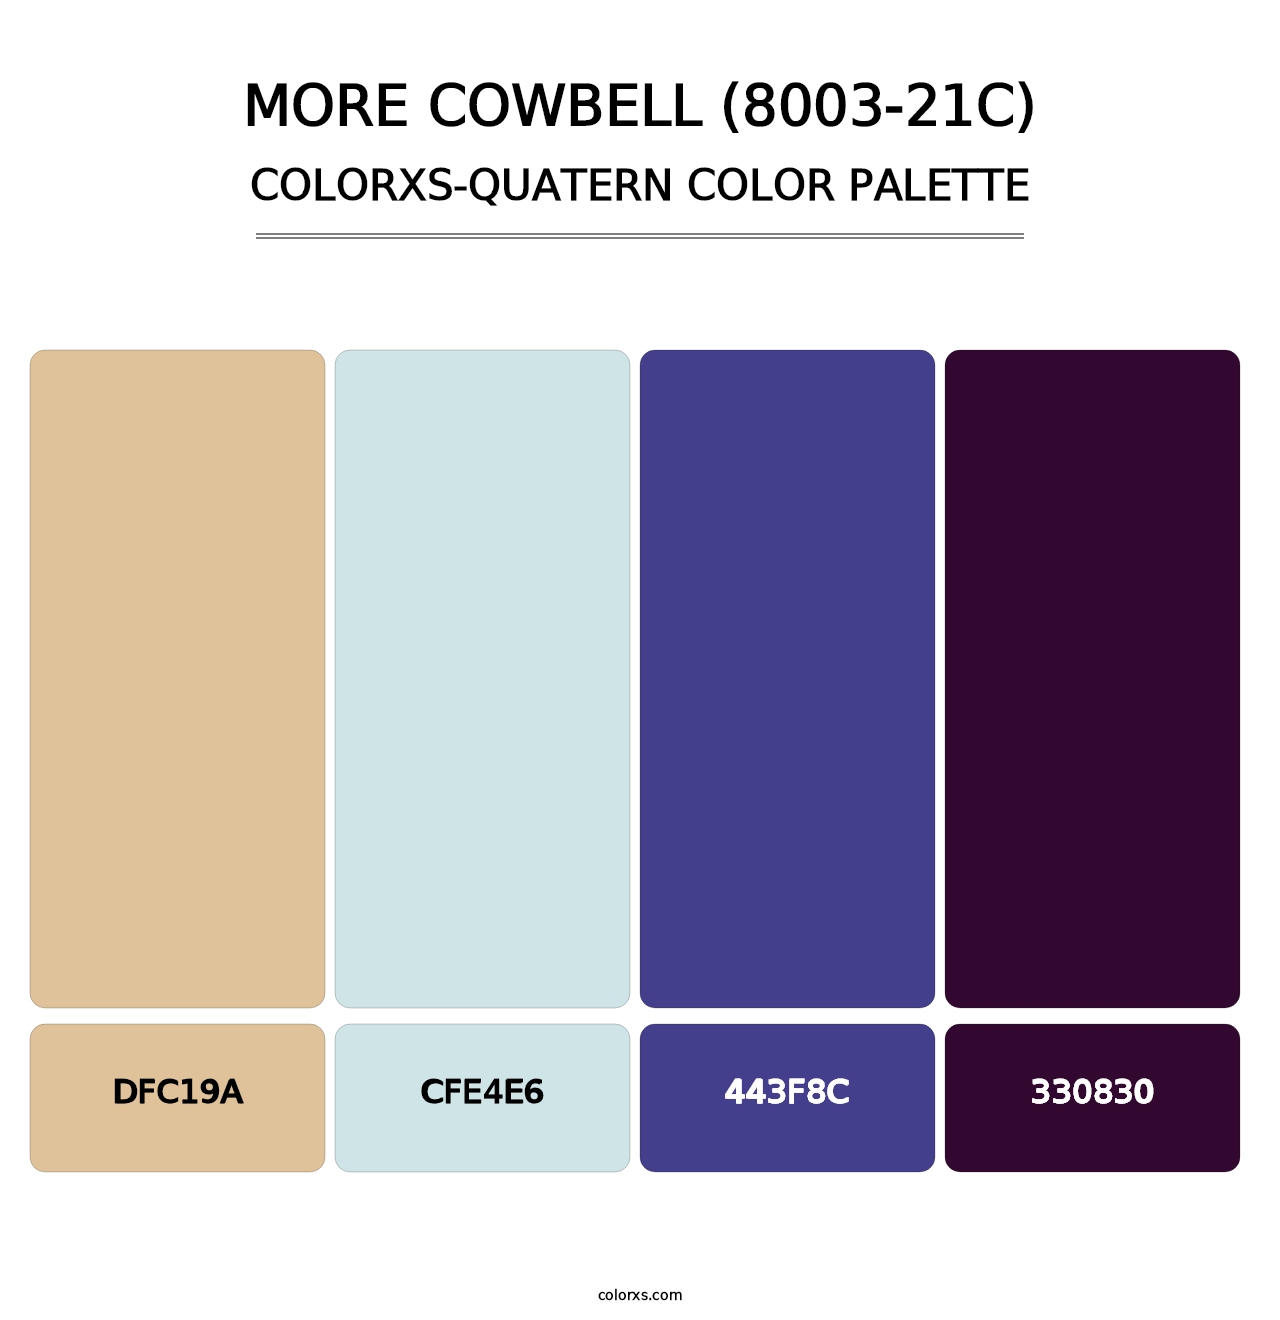 More Cowbell (8003-21C) - Colorxs Quatern Palette